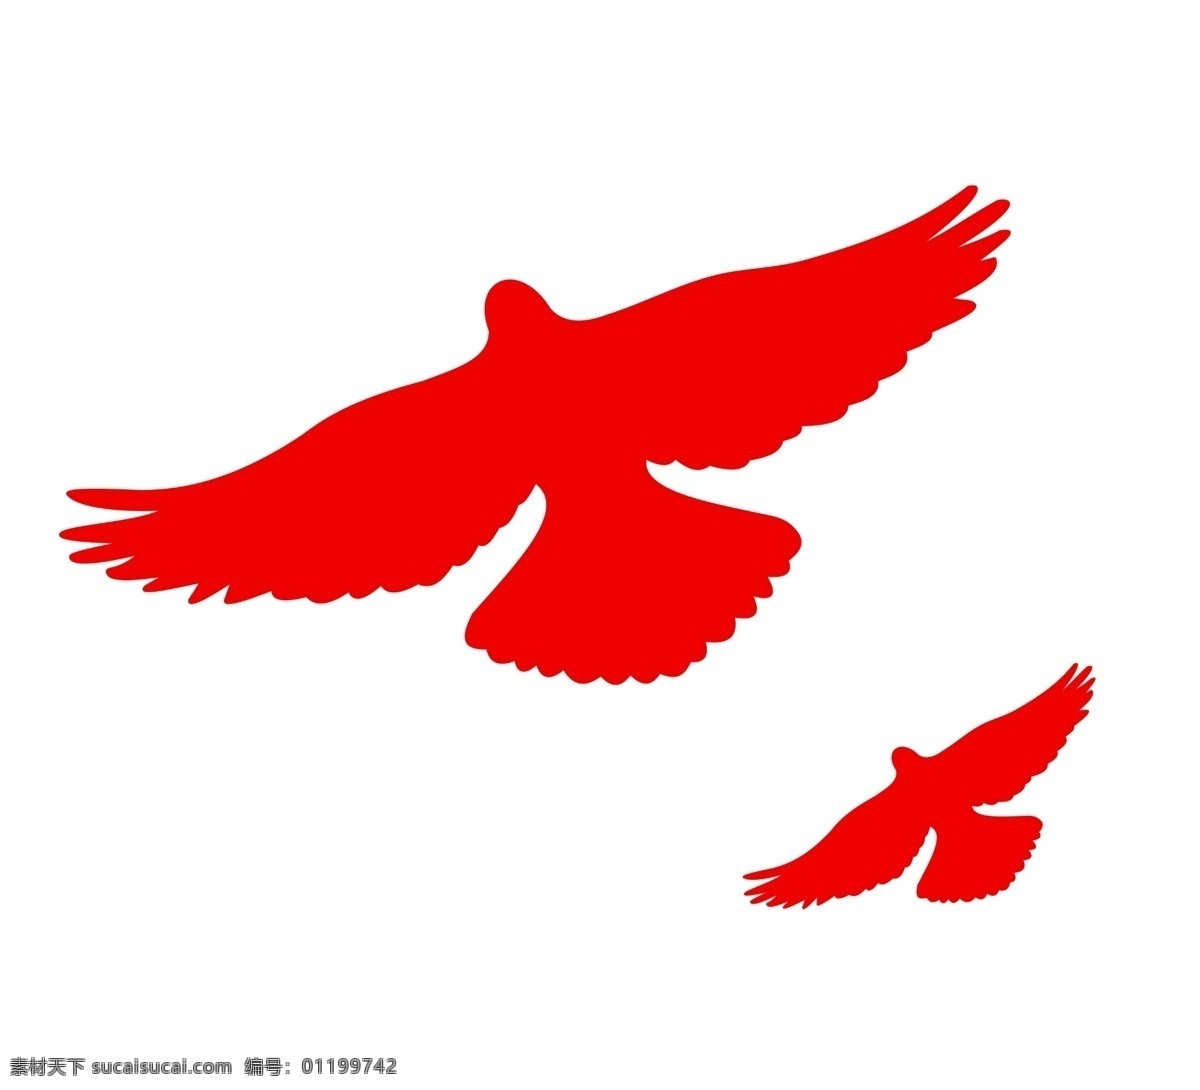 鸽子图片 鸽子 和平鸽 天空鸟 设计素材 红色 分层